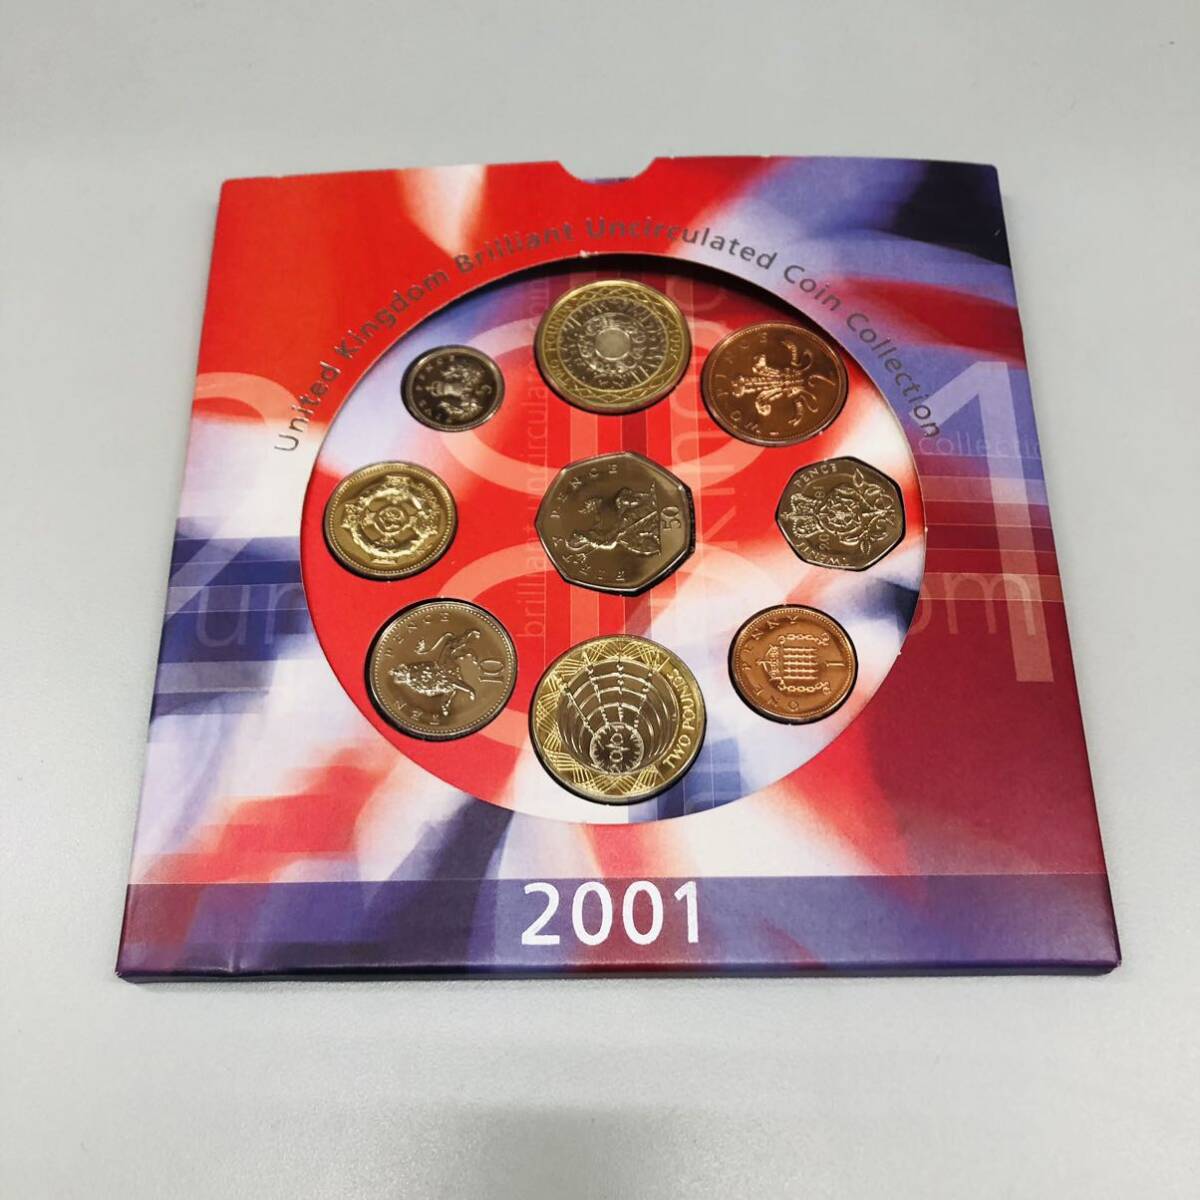 お買い得 イギリス ロイヤルミント ミントセット 2001年 2002年 2004年 3点セット 記念硬貨 コインセット 世界のコイン コレクションの画像2